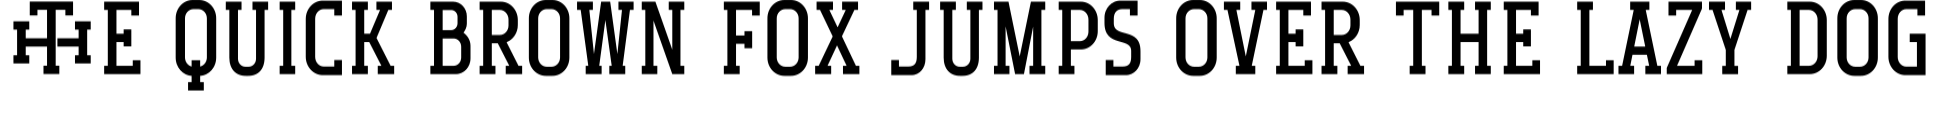 Monogram Holder specimen 15